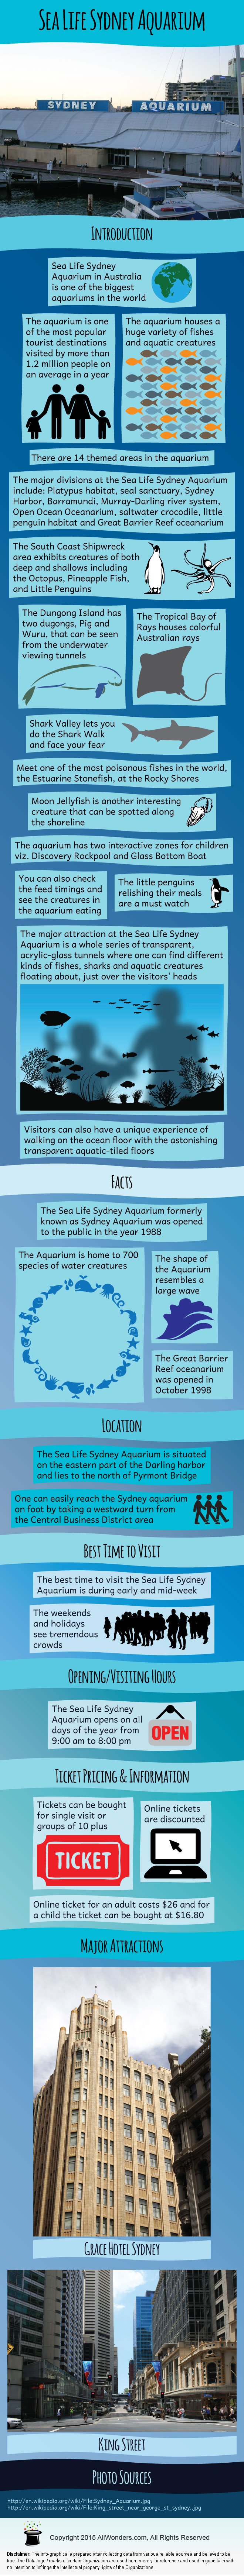 Sea Life Sydney Aquarium - Facts & Infographic